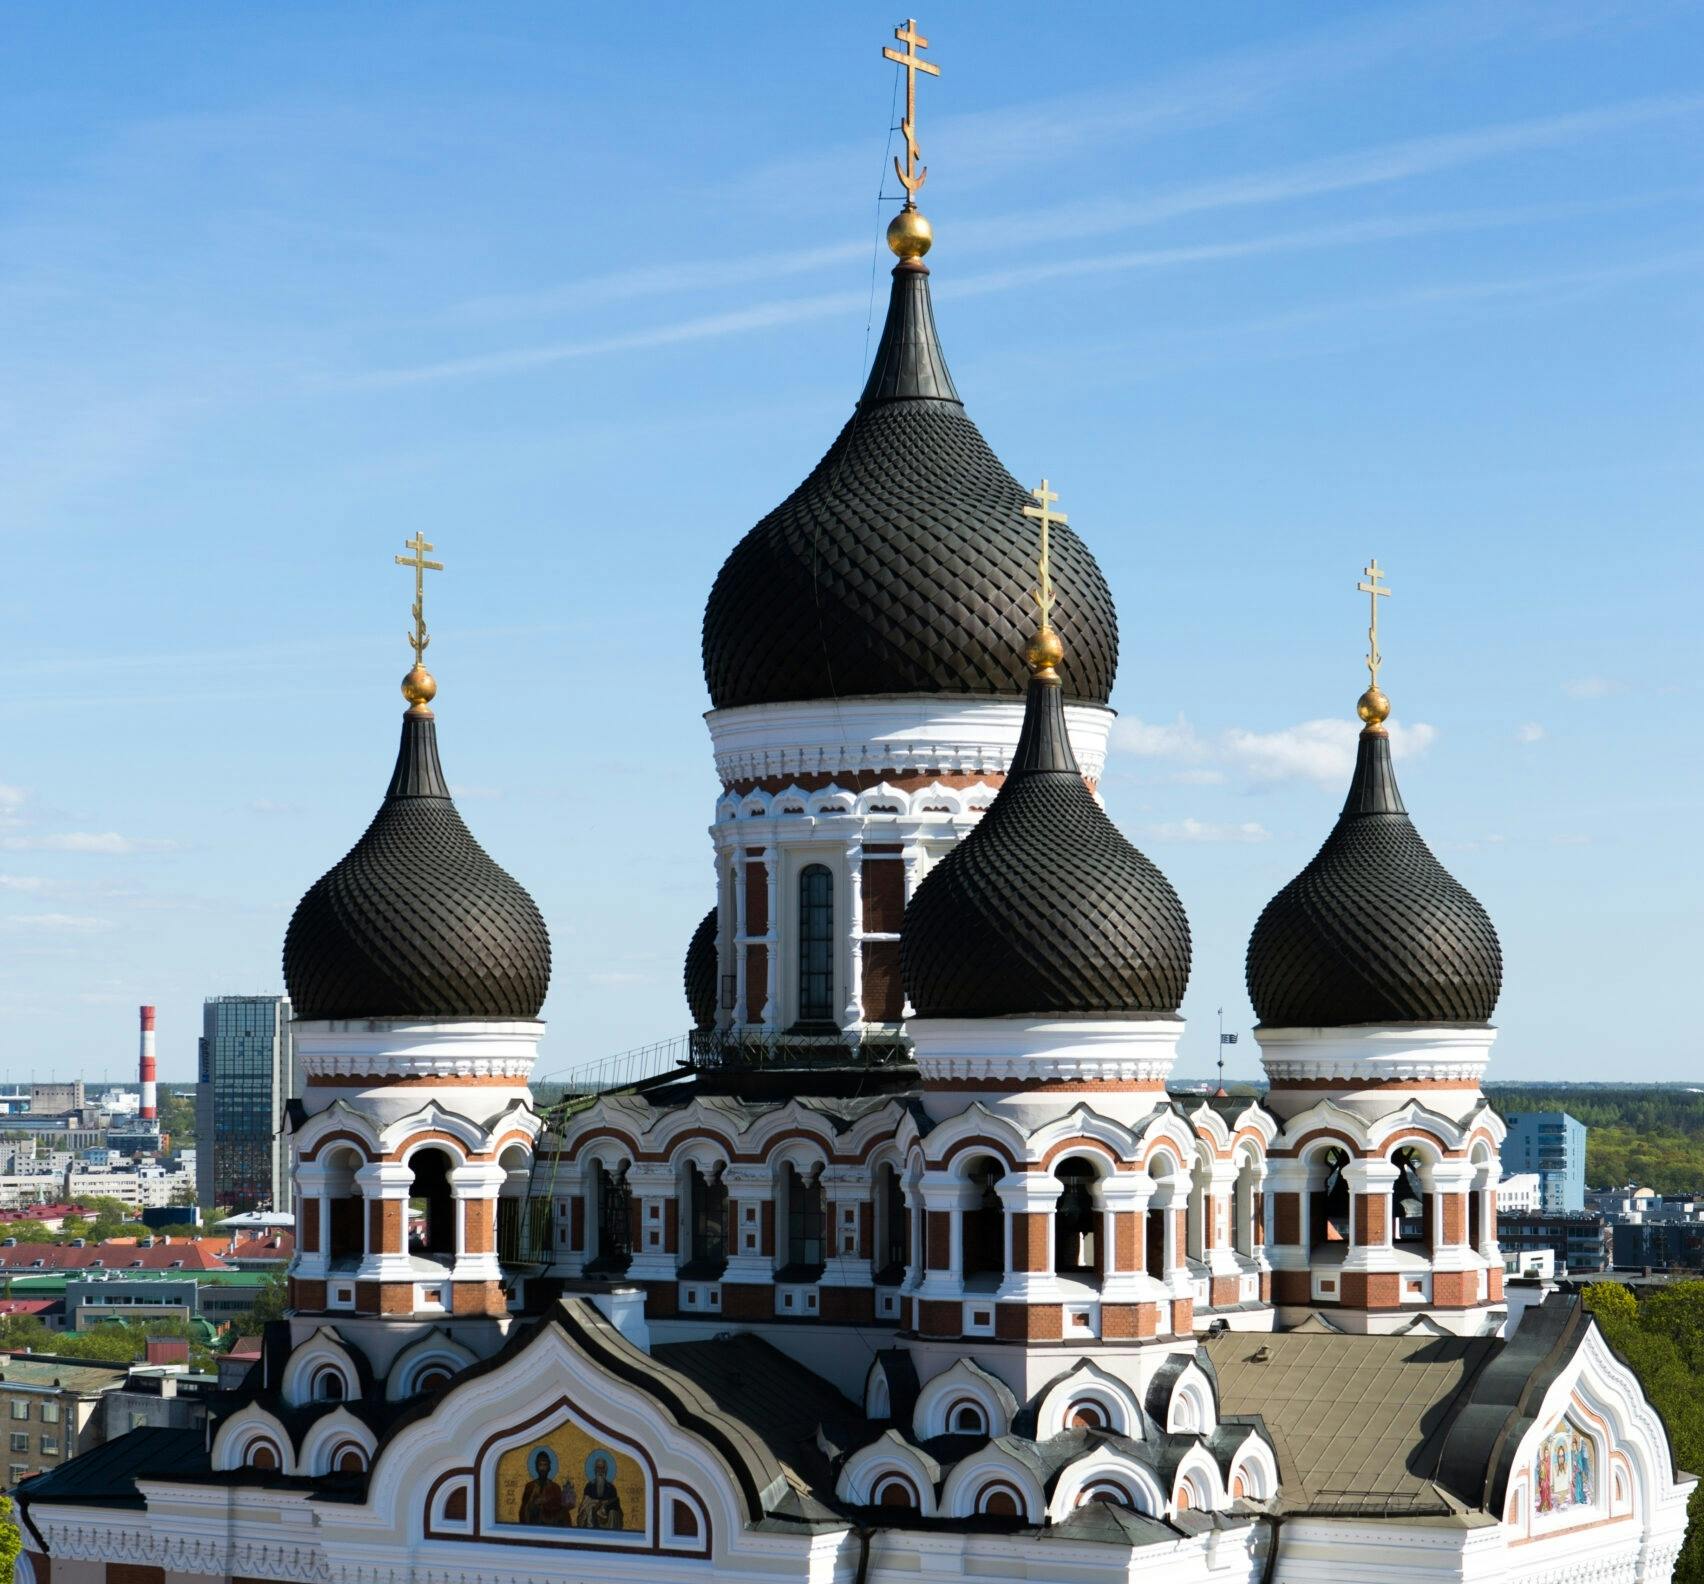 Zwiedzanie prawosławnej katedry Aleksandra Newskiego w Tallinie